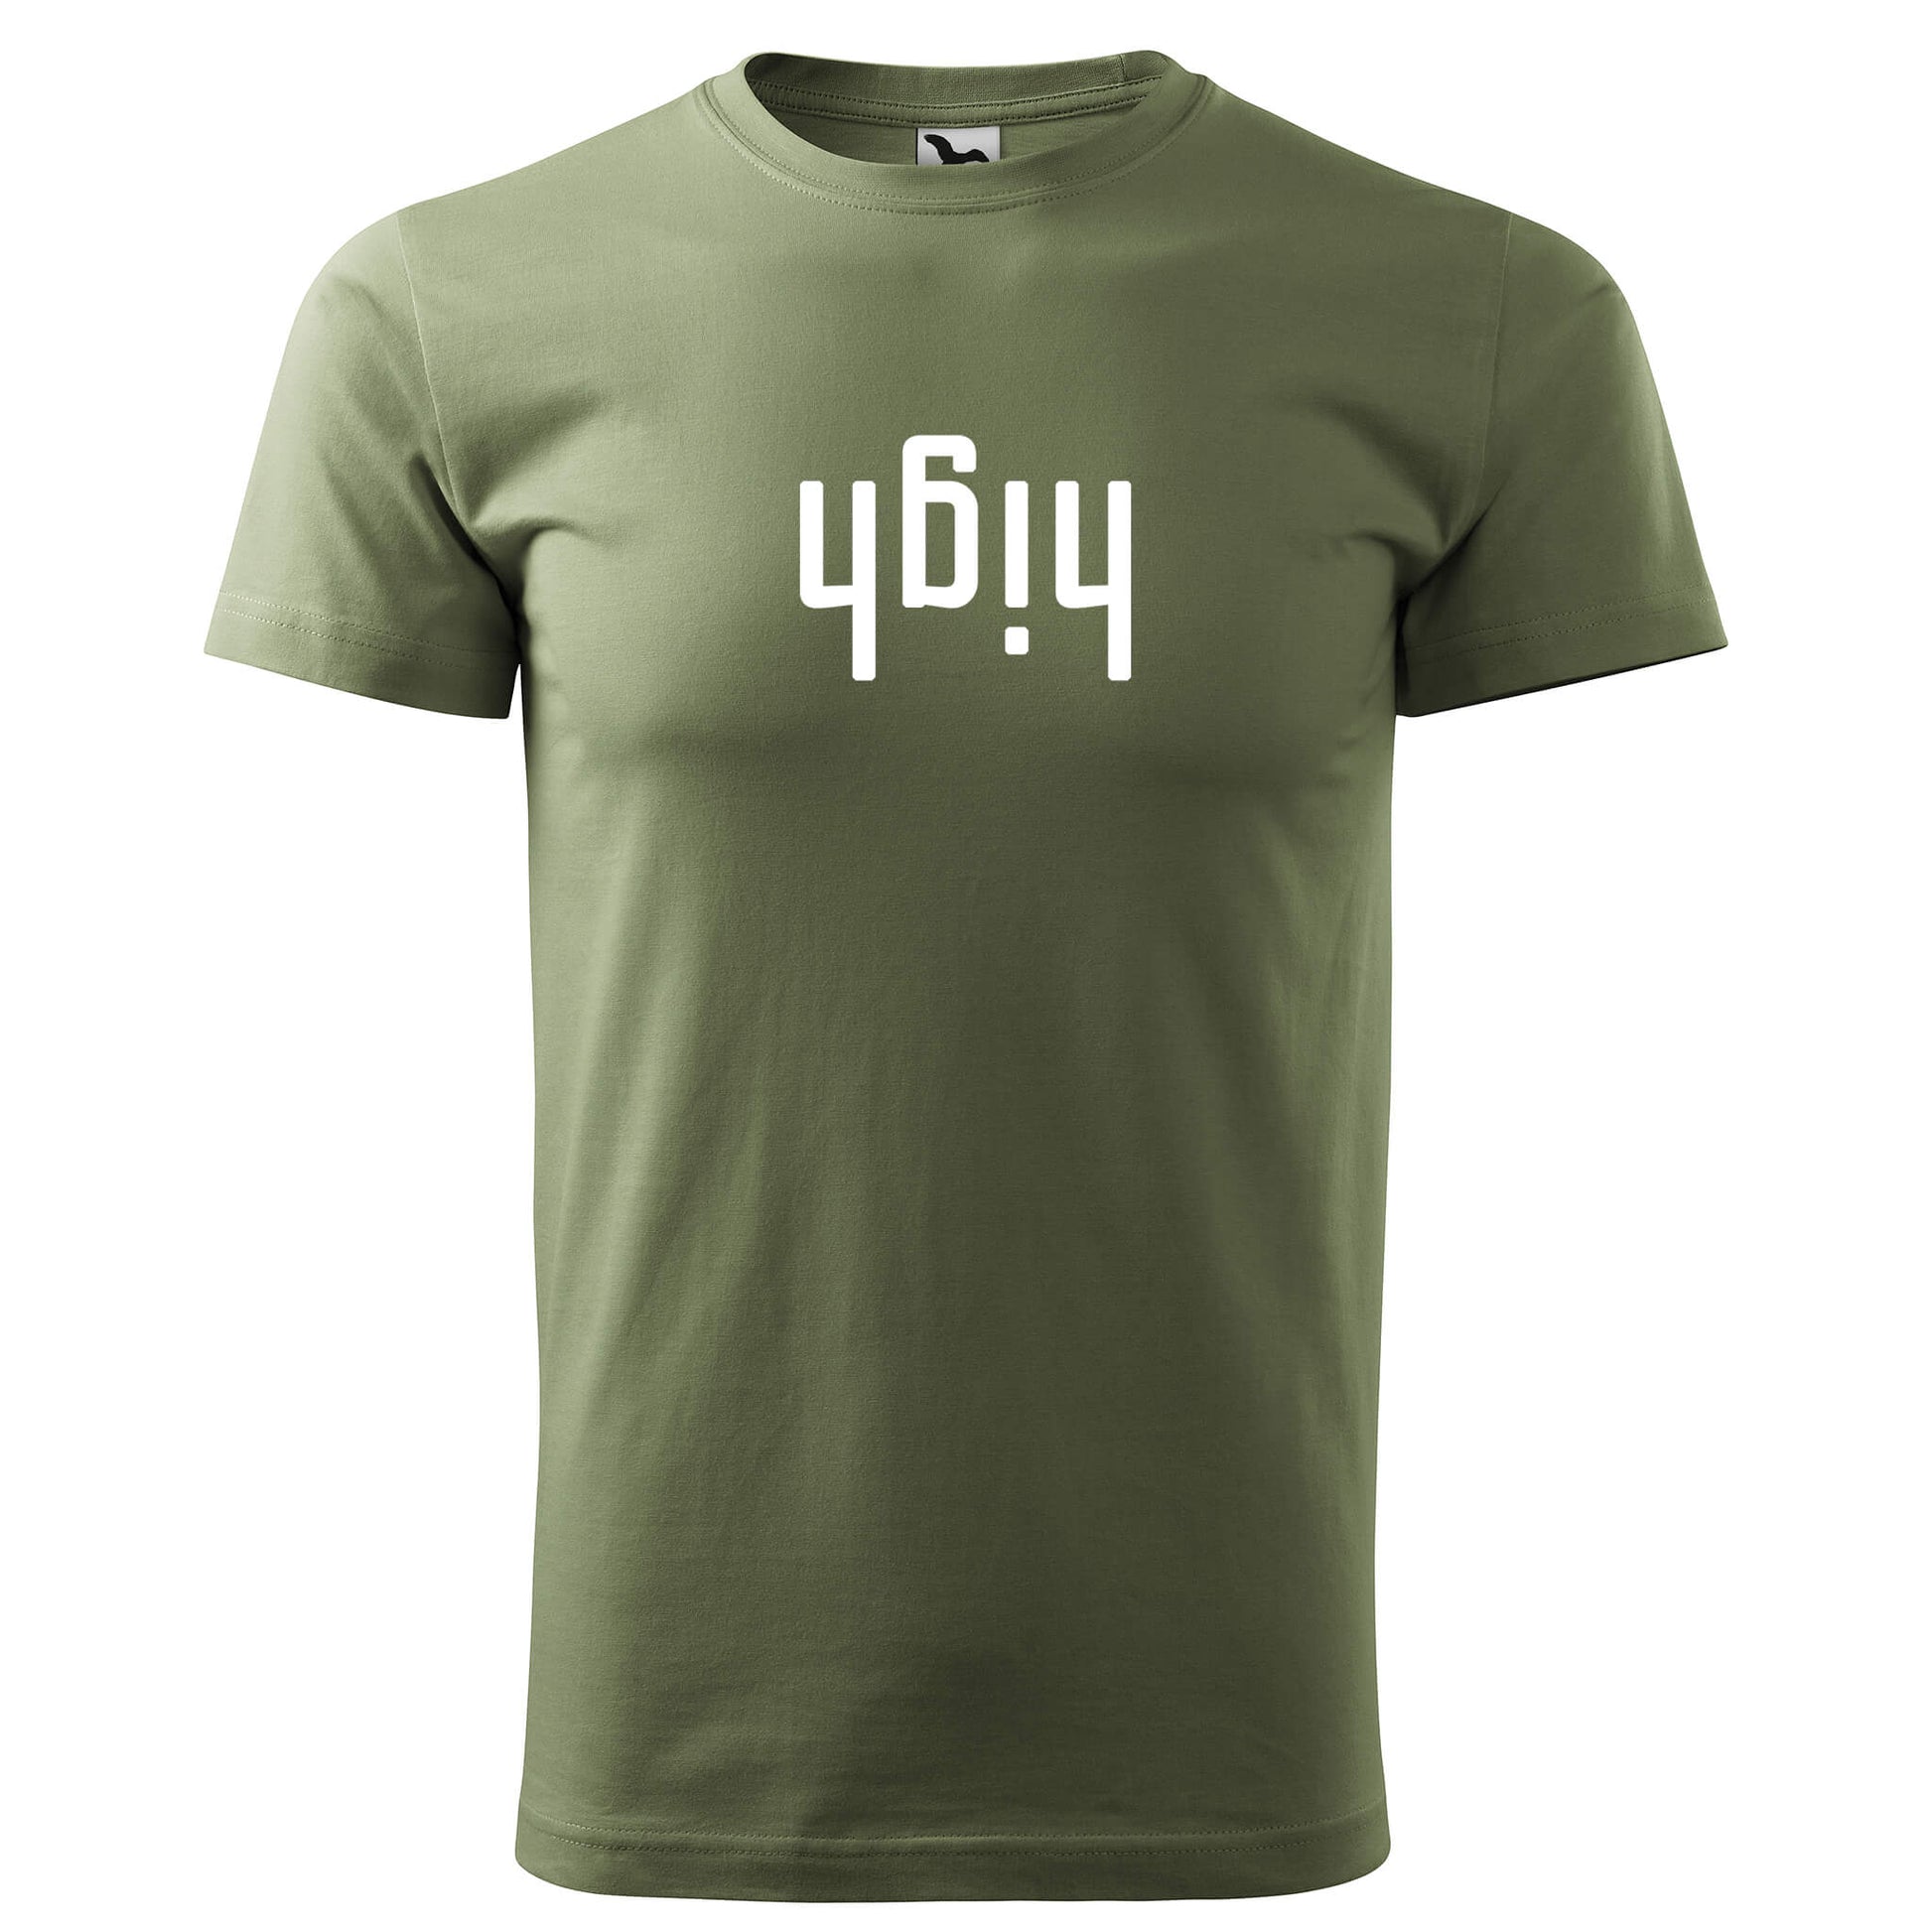 T-shirt - high - rvdesignprint